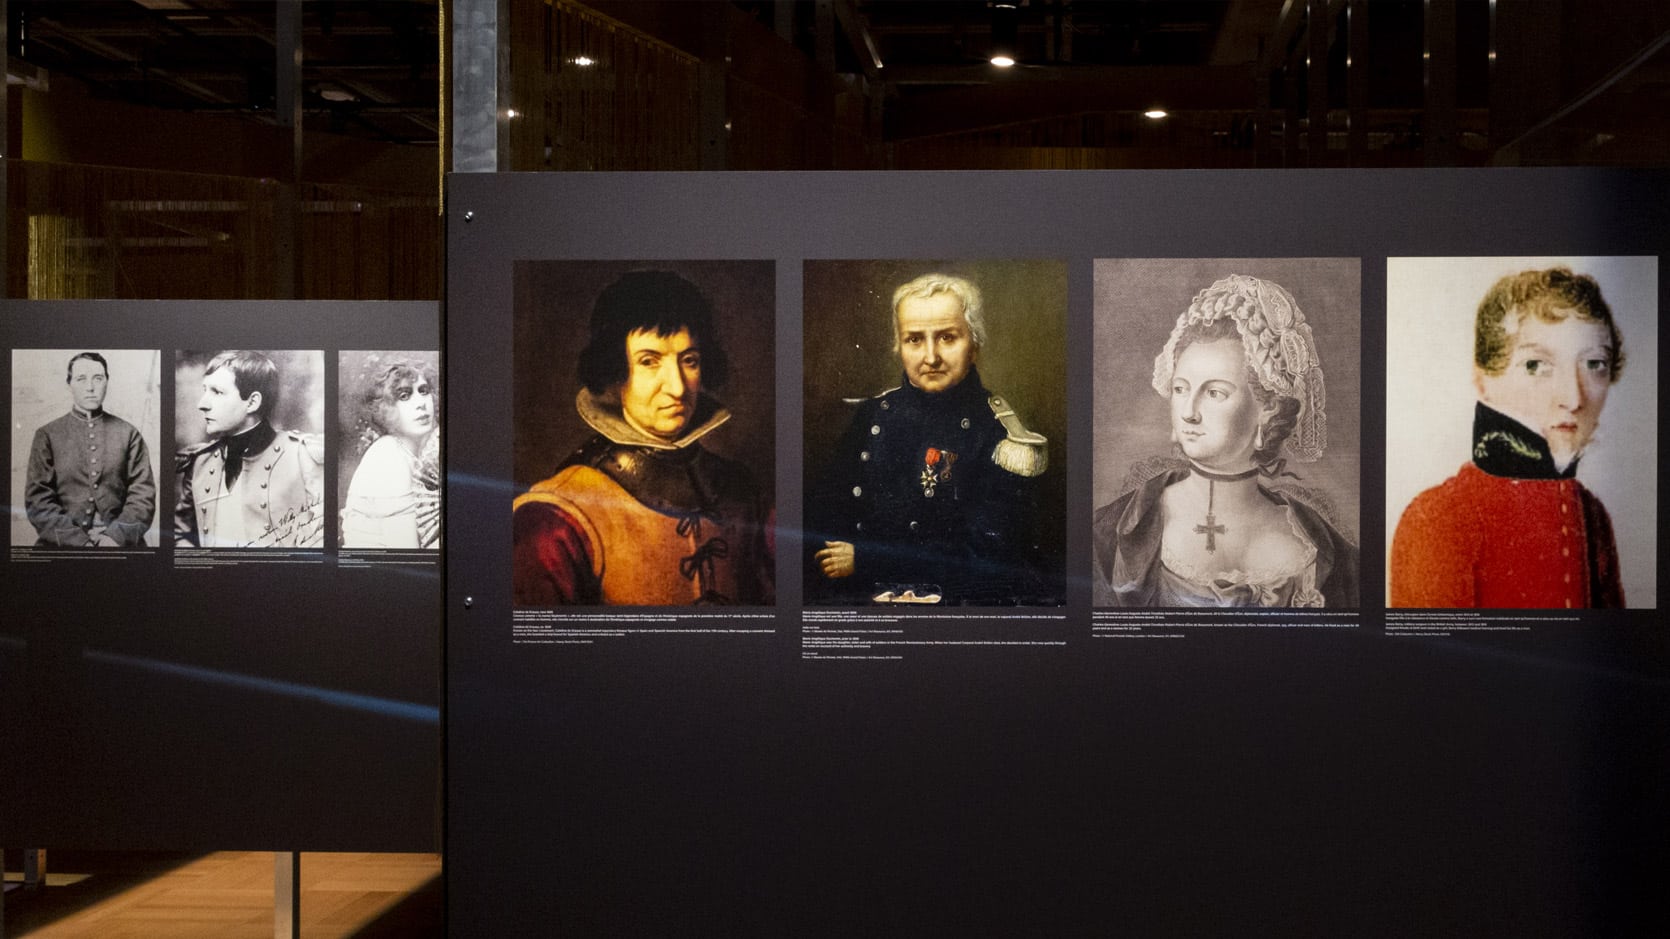 Toiles et portraits en noir et blanc de personnages historiques dont l'identité ou l'expression de genre a été camouflée.